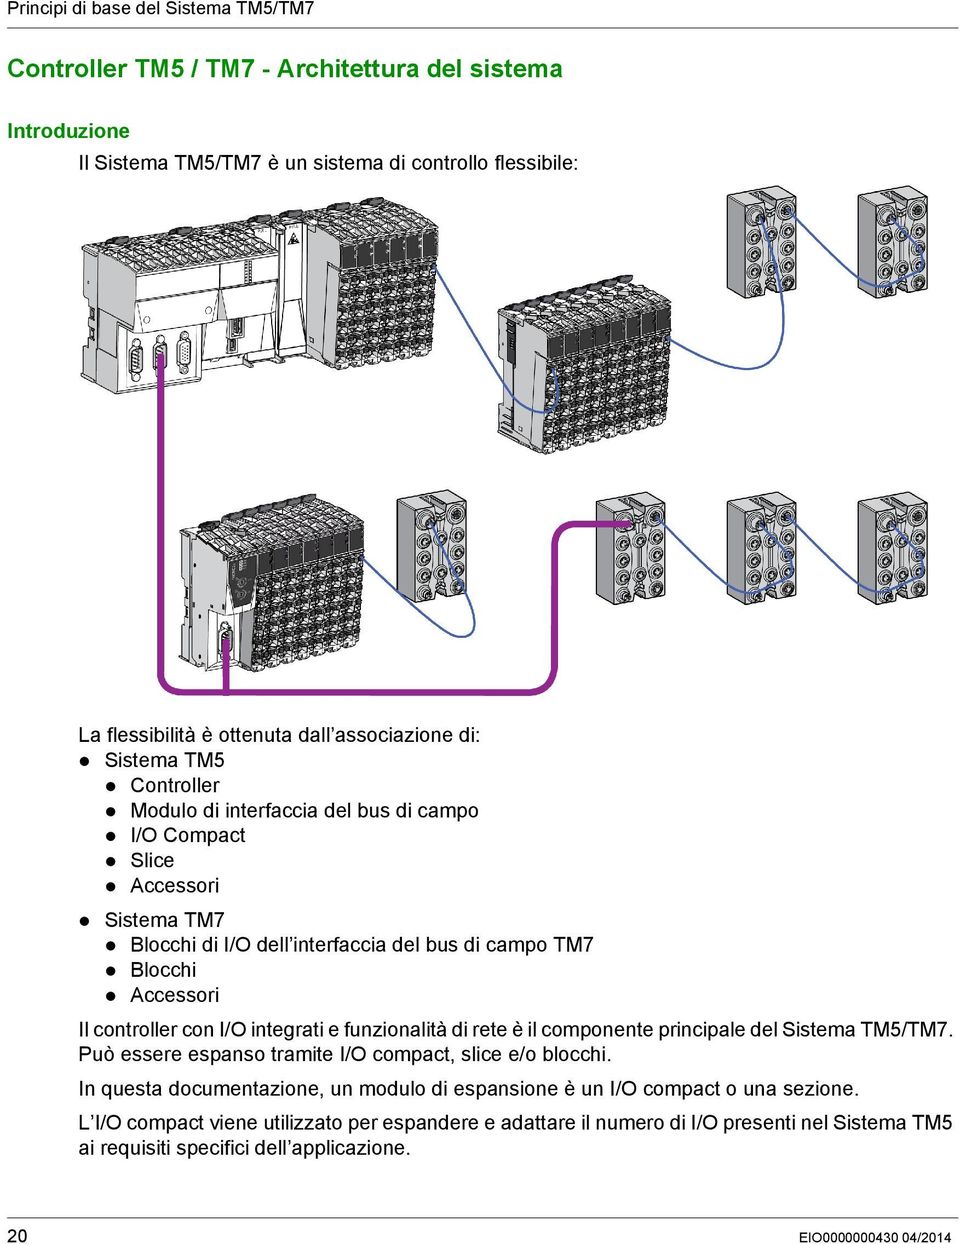 controller con I/O integrati e funzionalità di rete è il componente principale del Sistema TM5/TM7. Può essere espanso tramite I/O compact, slice e/o blocchi.